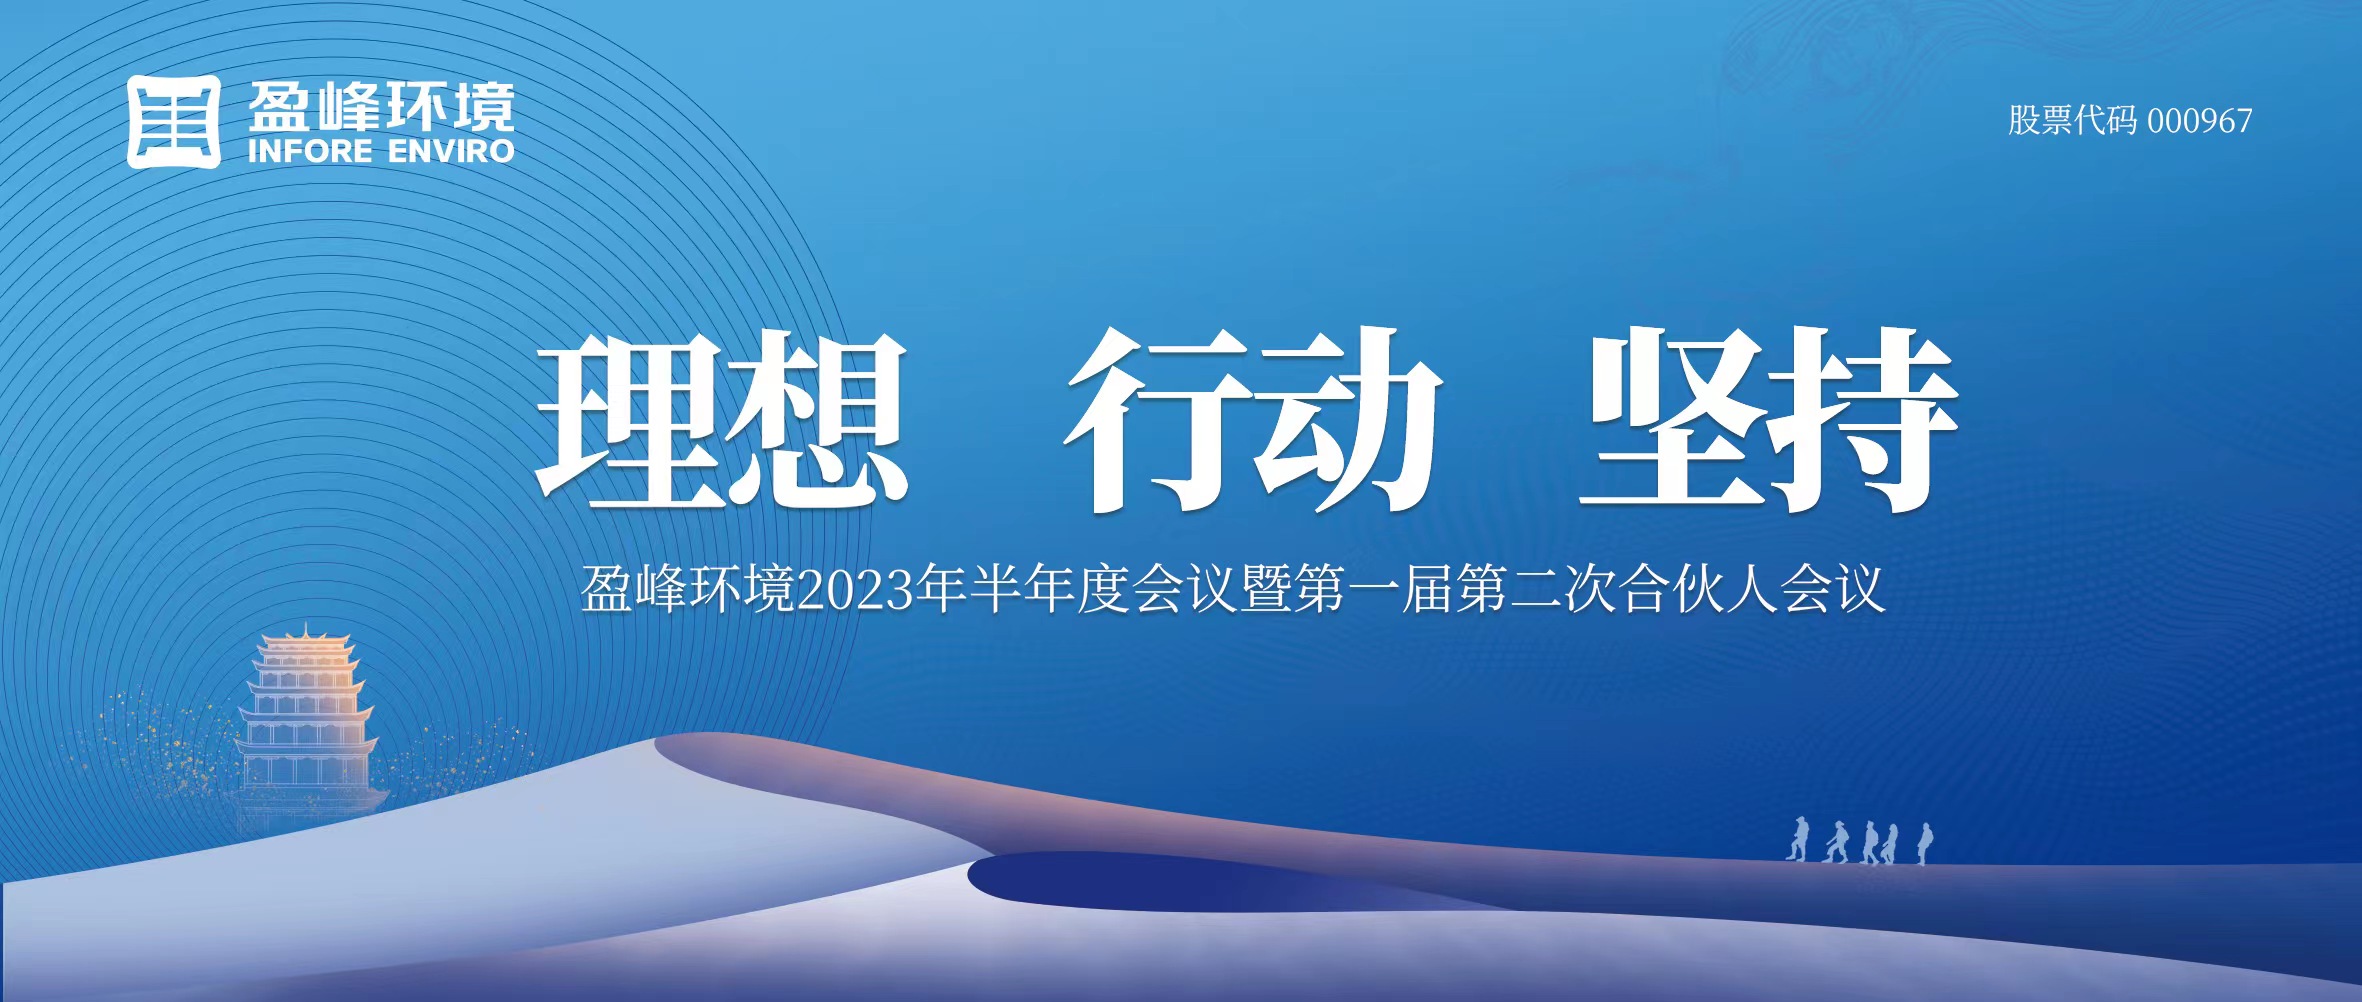 理想、行动、坚持 | 华体育会(中国)股份有限公司官网2023年半年度会议暨第一届第二次合伙人会议圆满召开